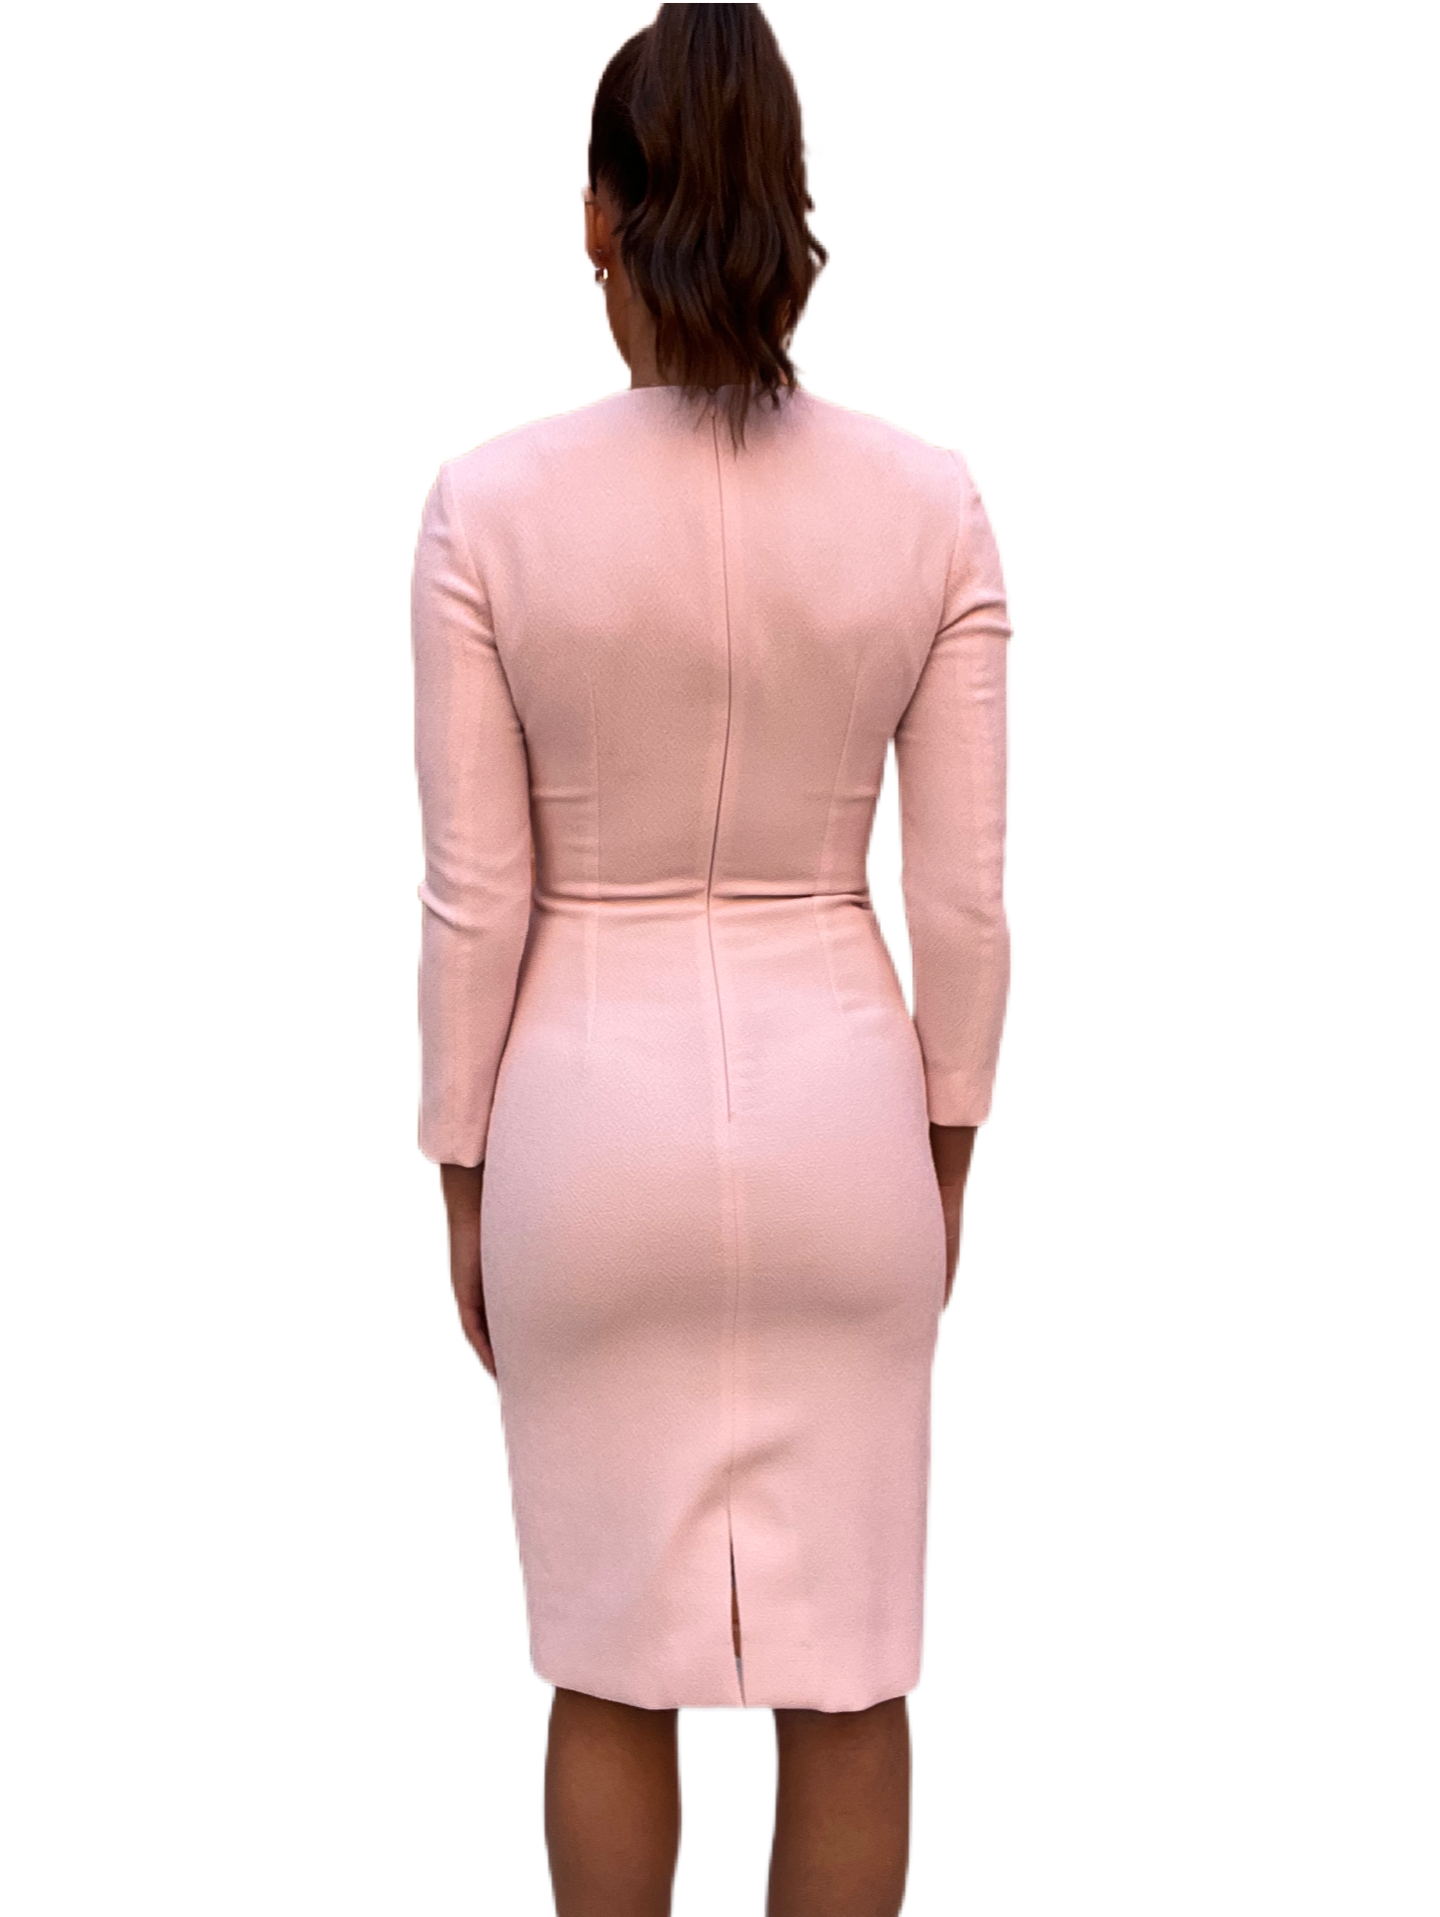 Emilia Wickstead Pink Dress. Size: 6